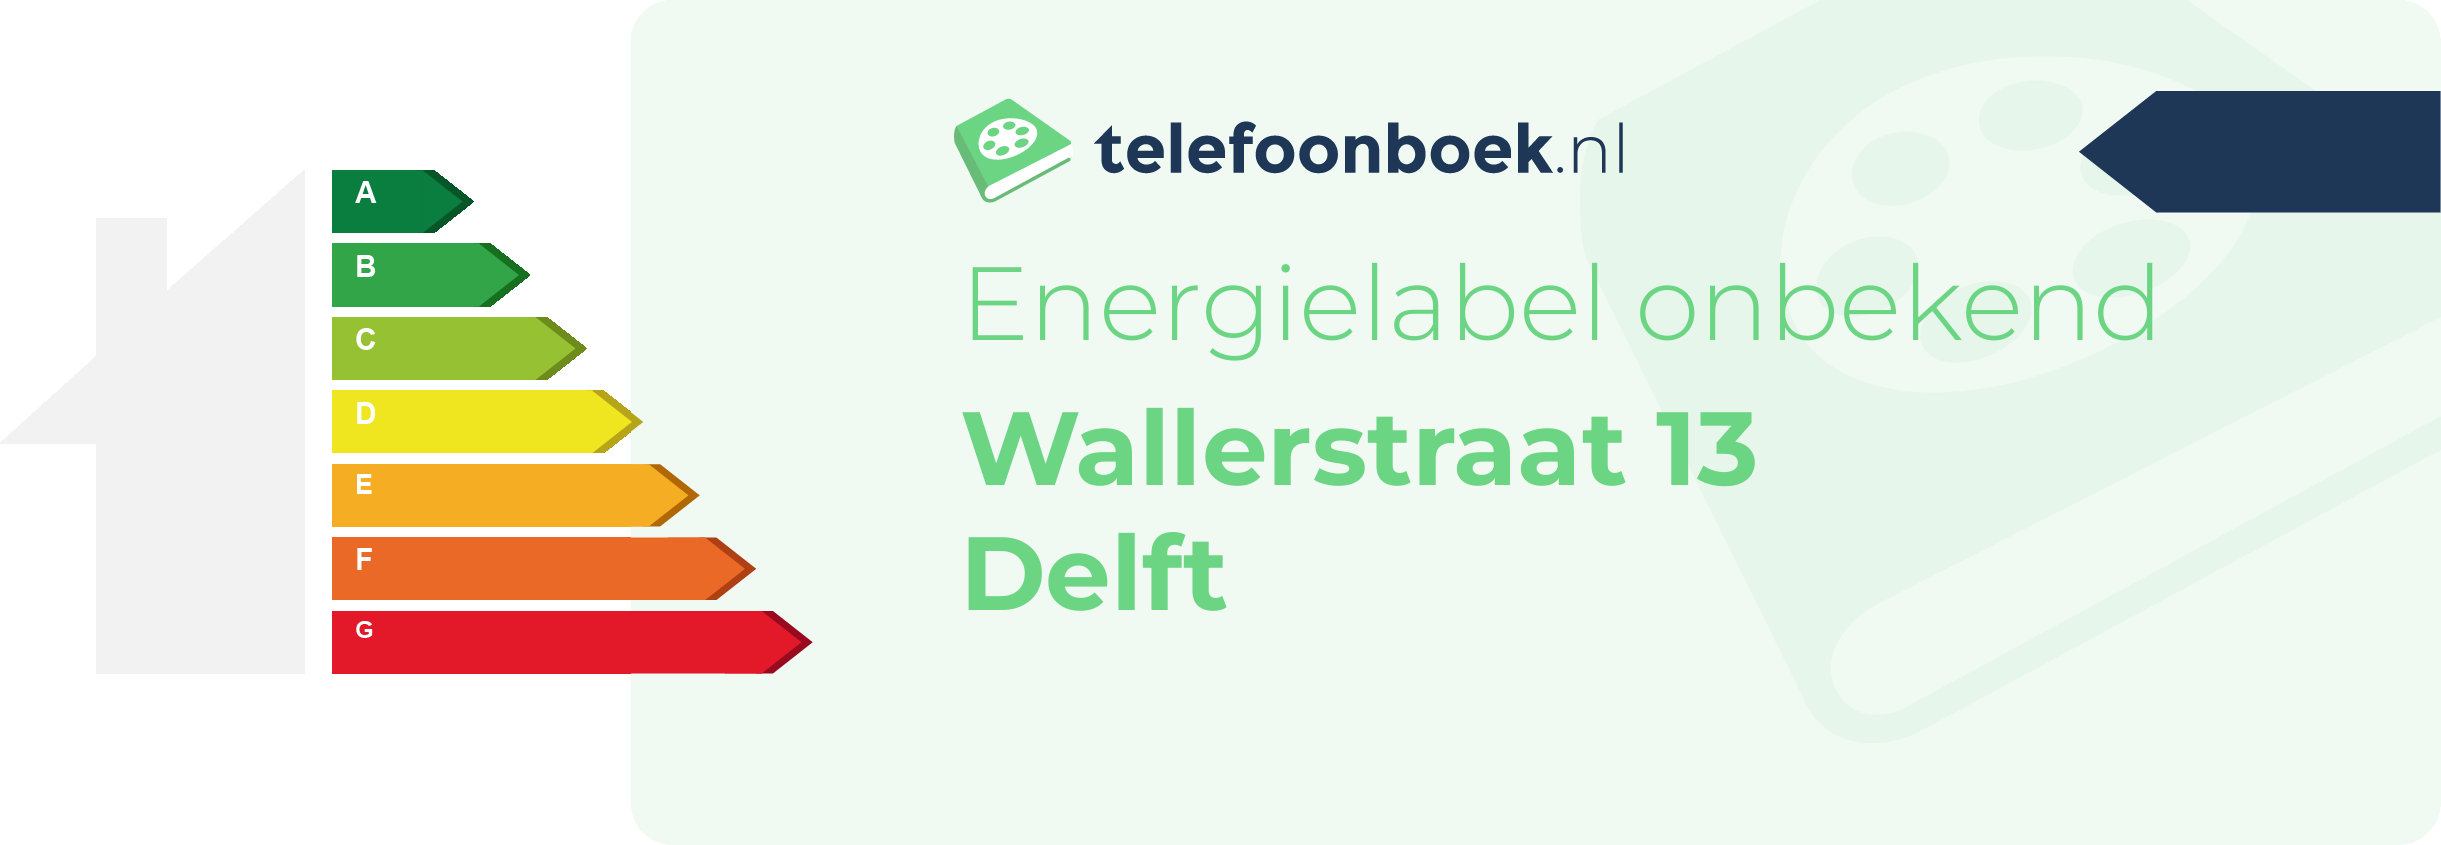 Energielabel Wallerstraat 13 Delft